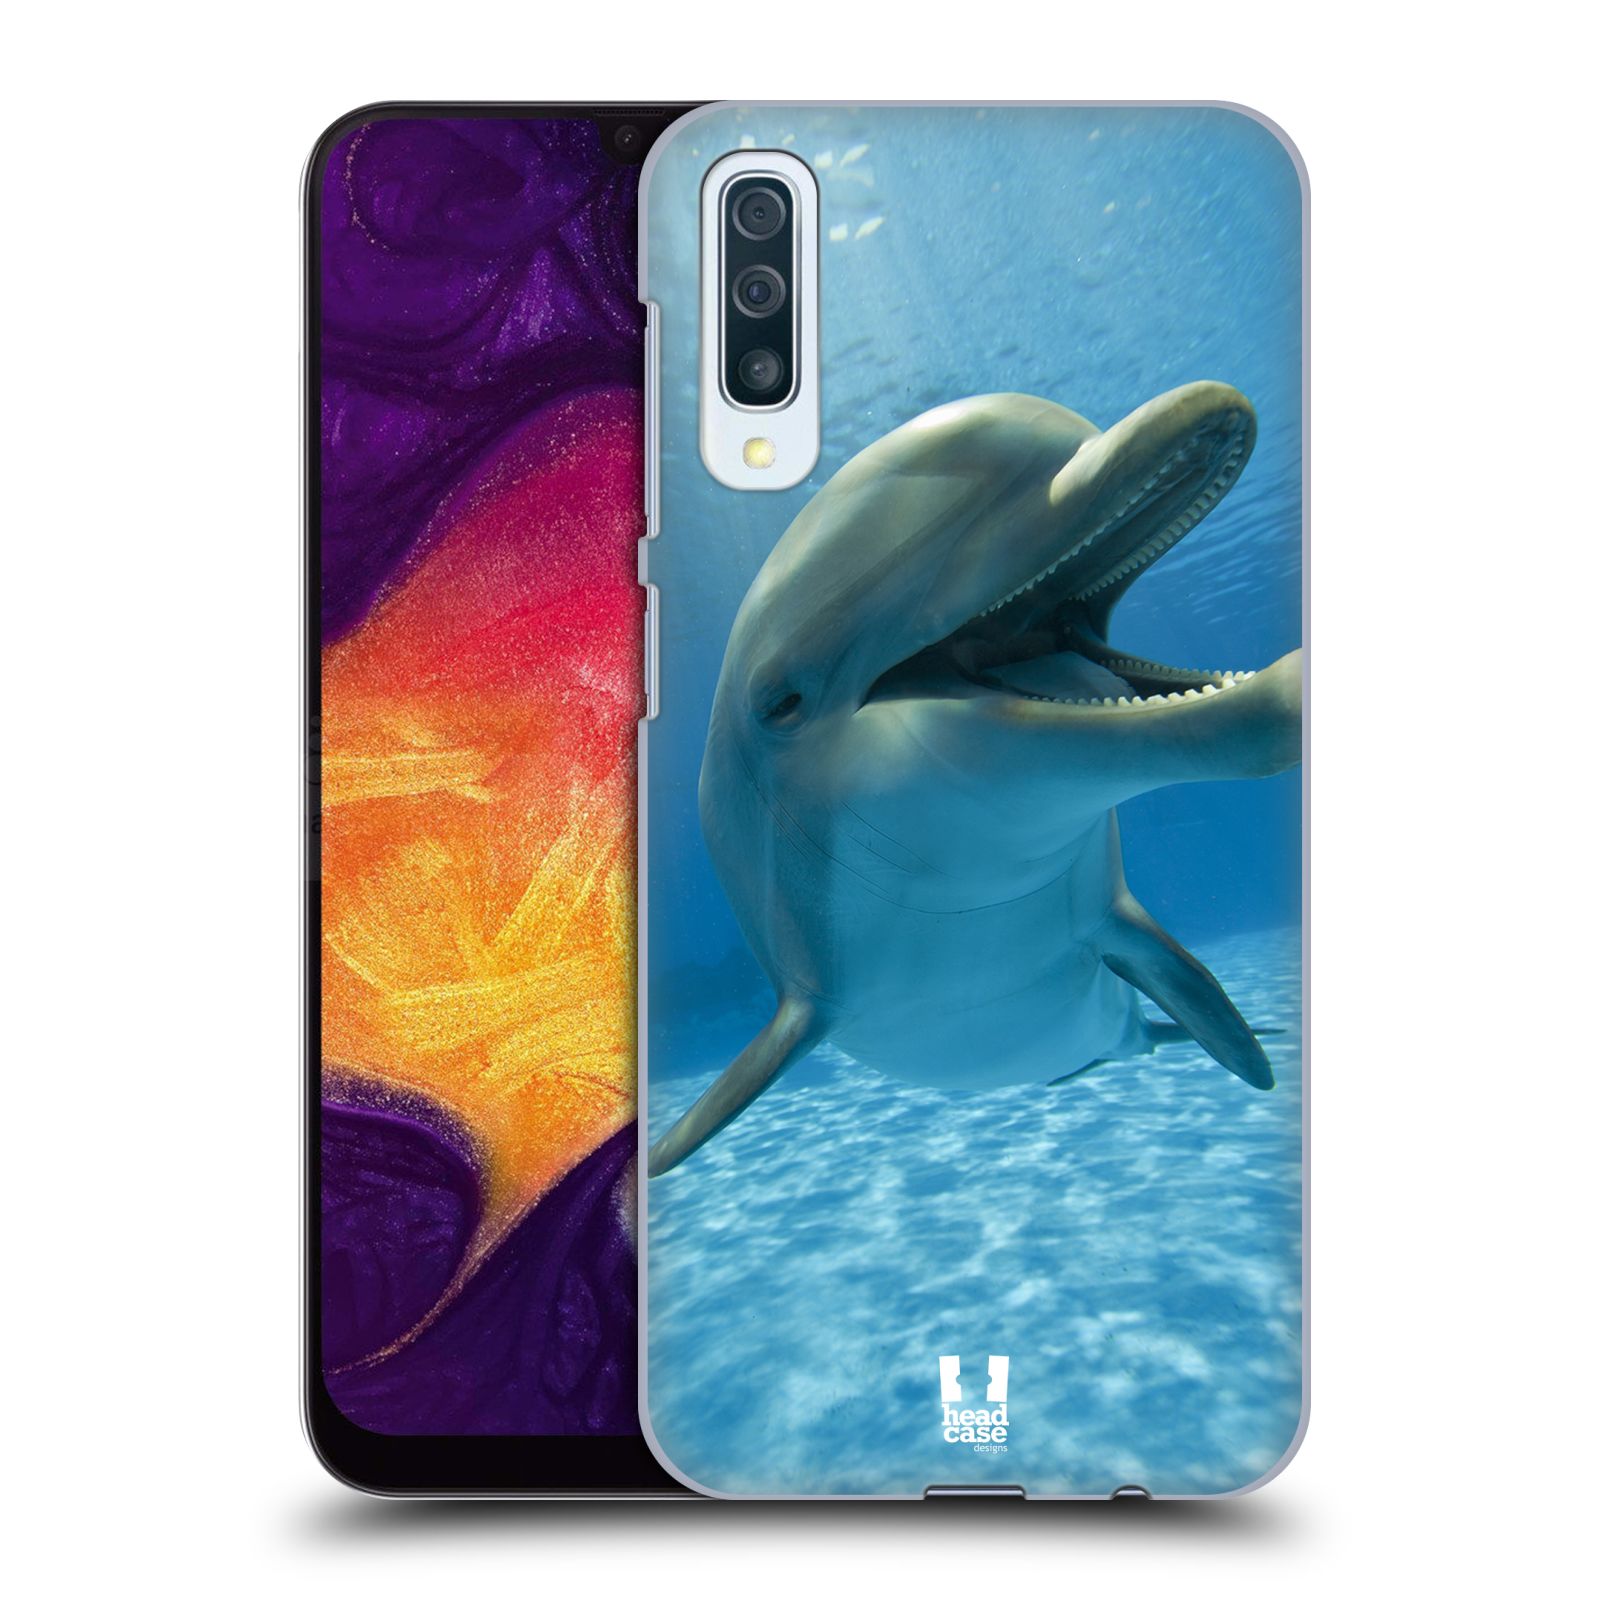 Zadní obal pro mobil Samsung Galaxy A50 / A30s - HEAD CASE - Svět zvířat delfín v moři